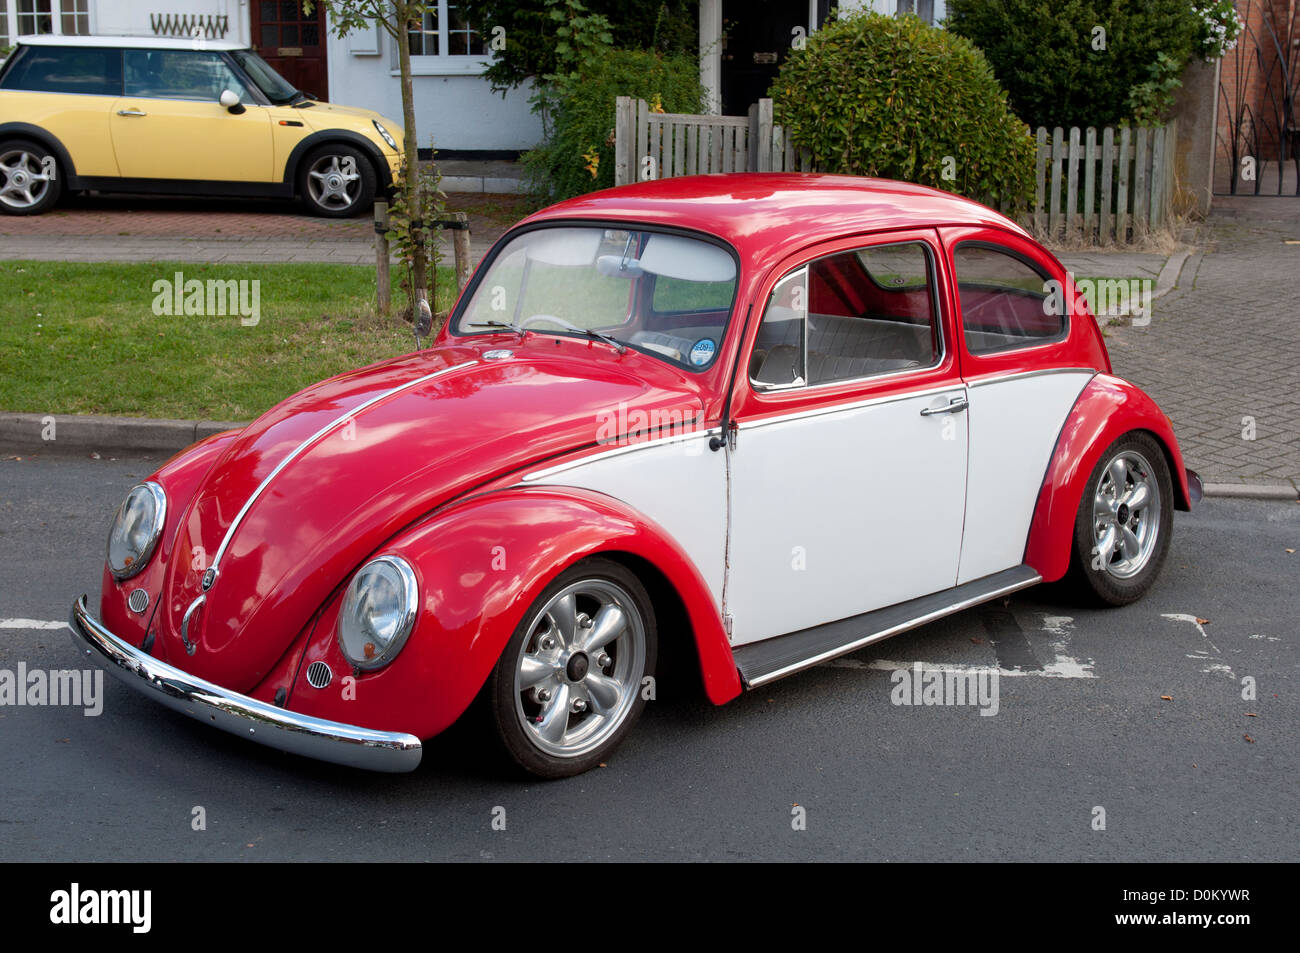 Two tone beetle immagini e fotografie stock ad alta risoluzione - Alamy